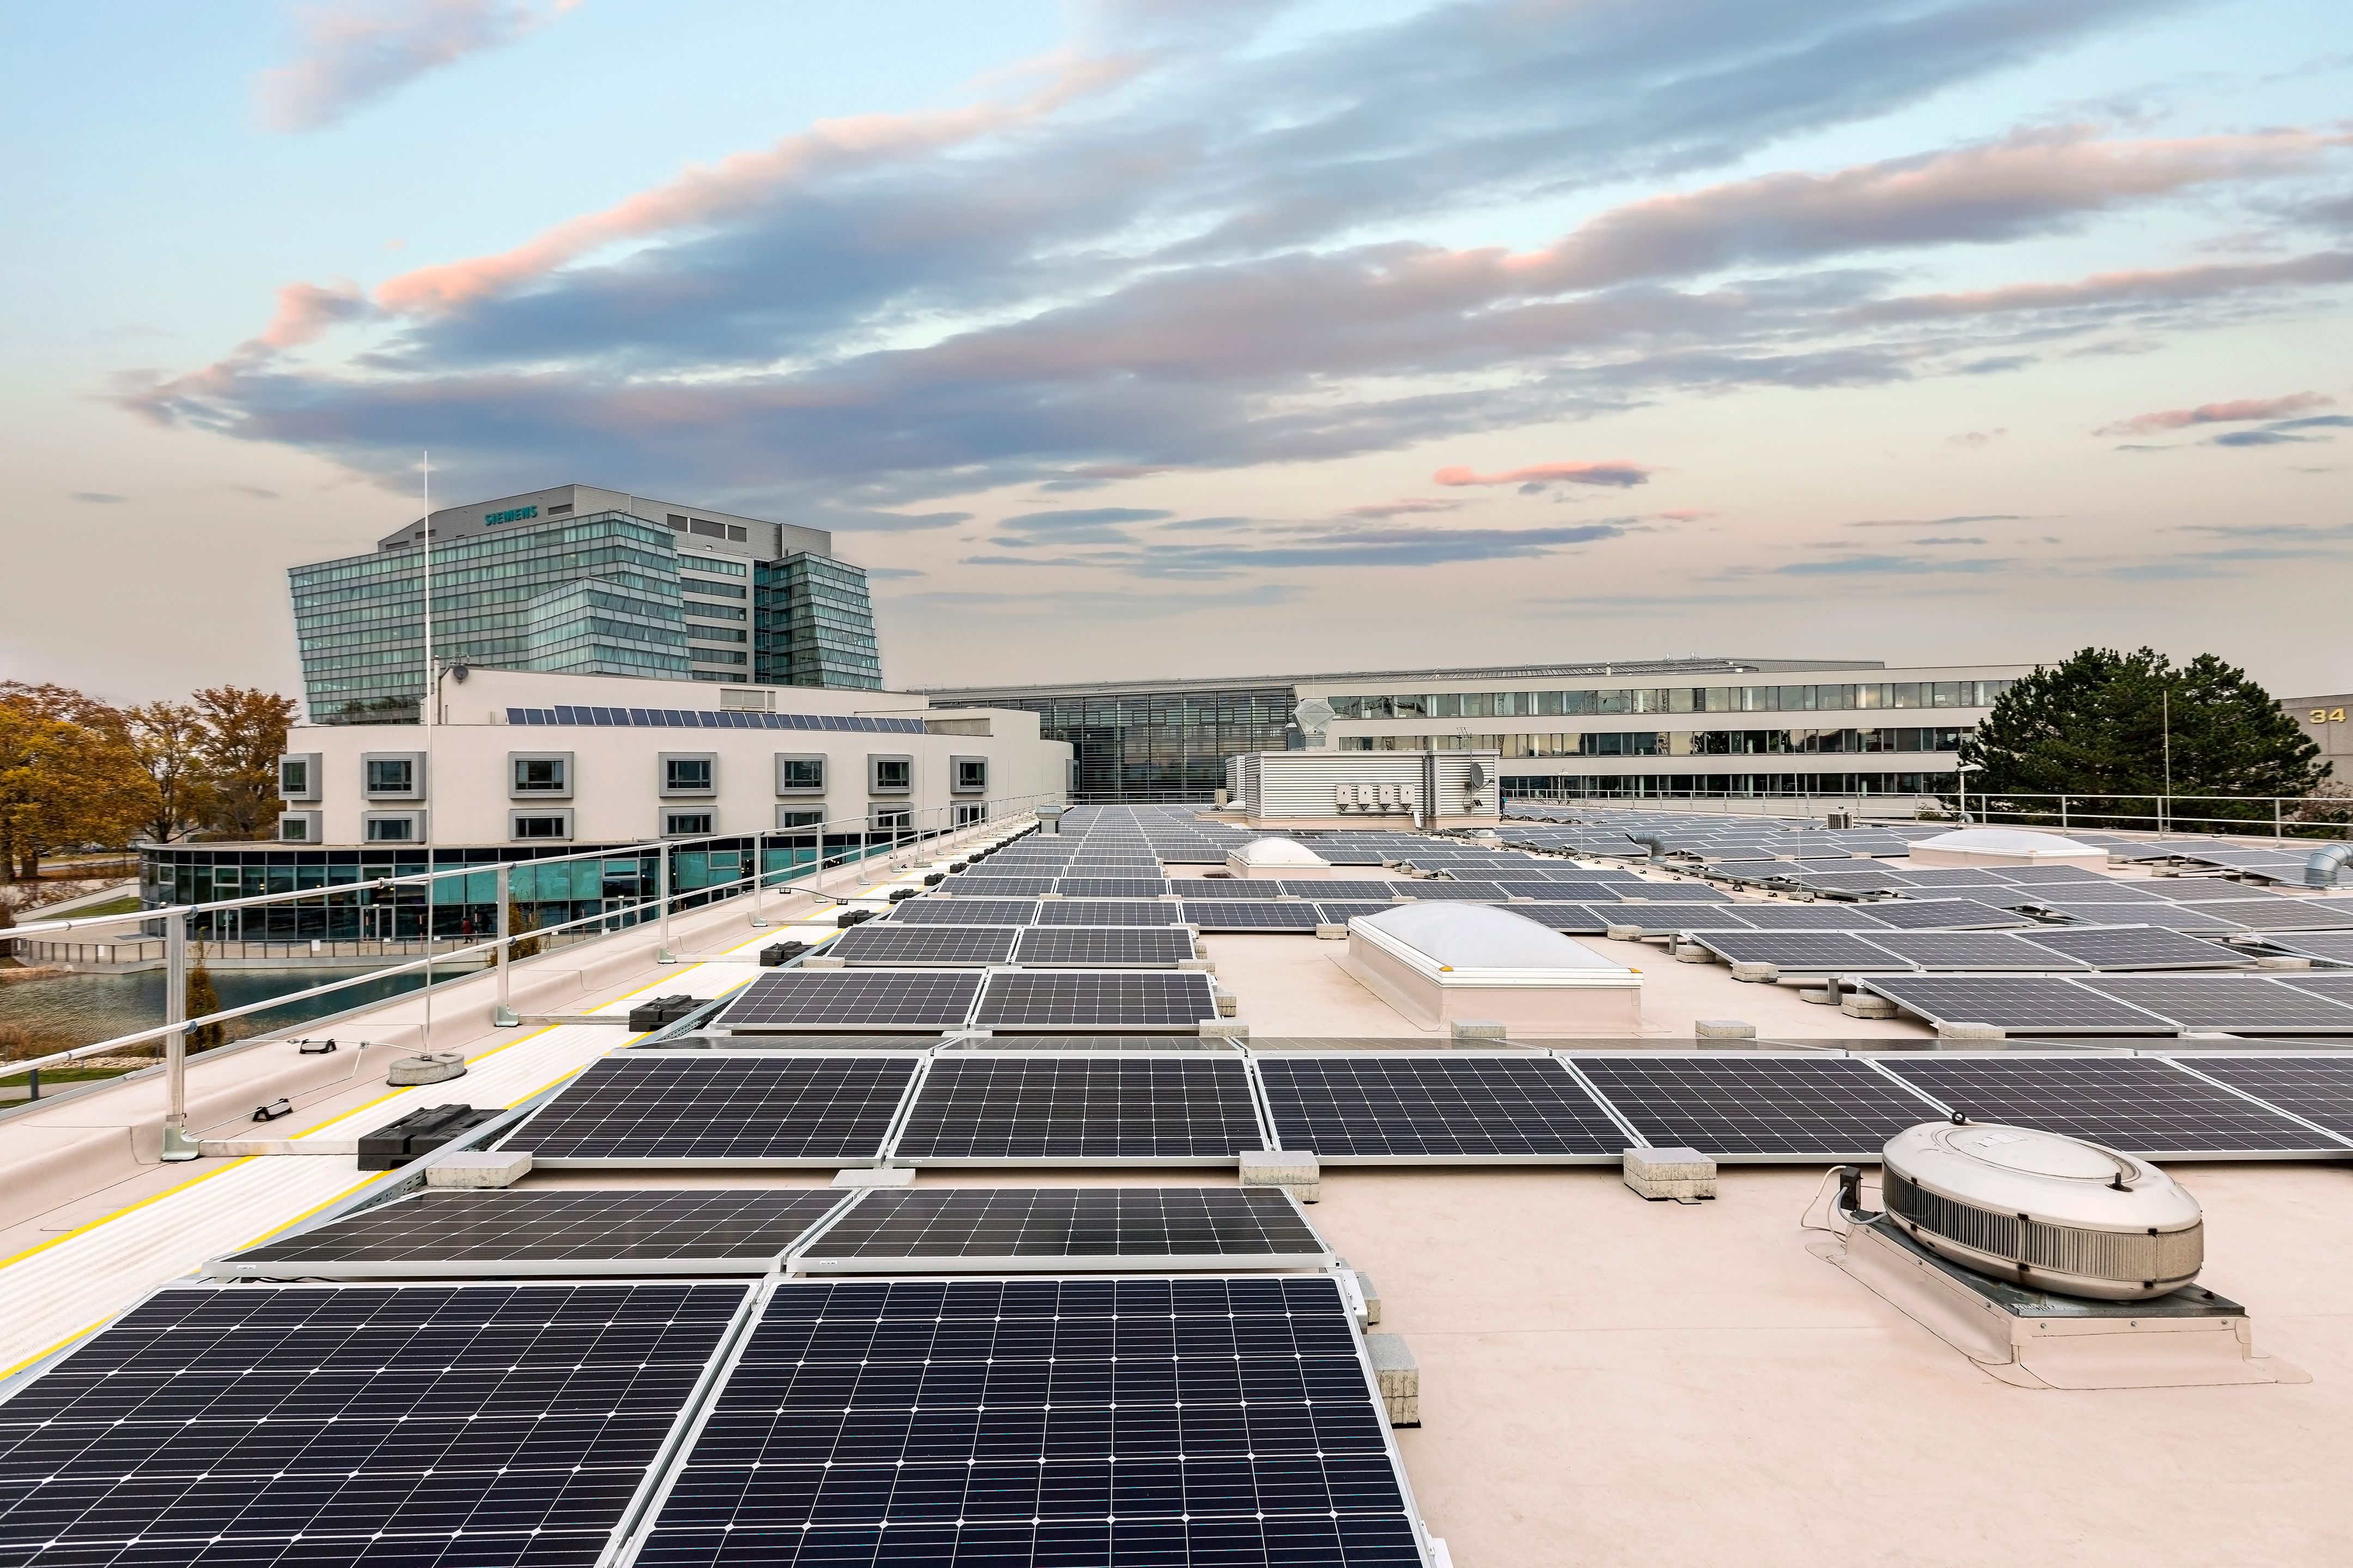 Mikrogridre kapcsolt napelemek a bécsi Siemens-irodaház tetőjén.Forrás: Siemens